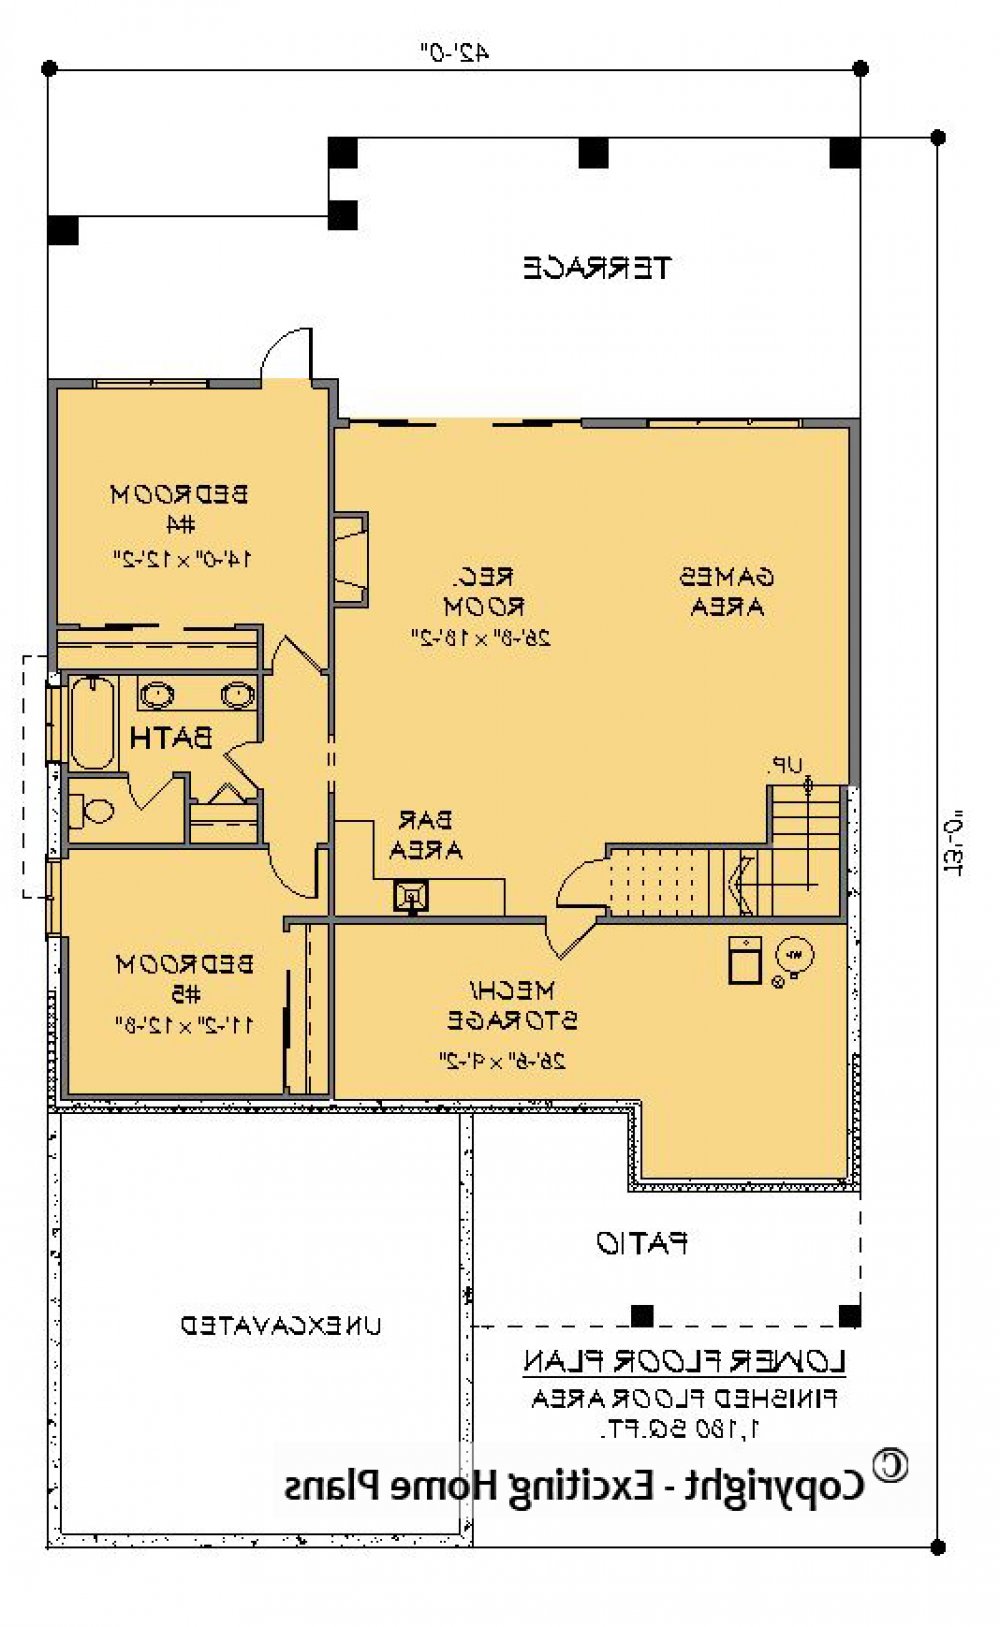 House Plan E1592-10 Lower Floor Plan REVERSE